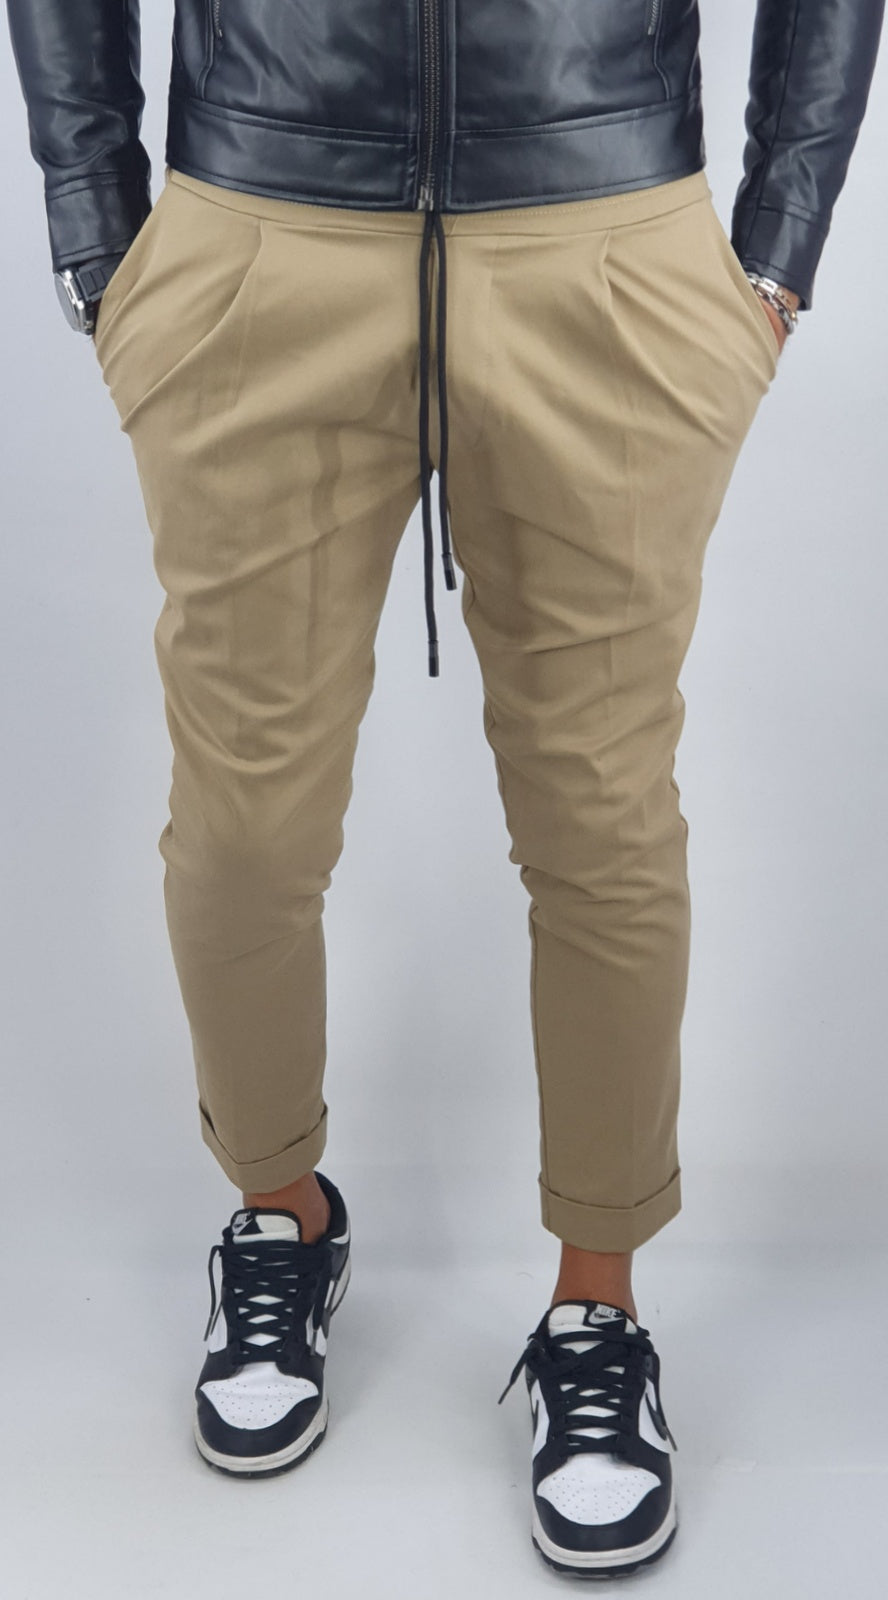 Pantalone Uomo Cotone Elastico Capri Invernale Tasche Americane Casual Pence